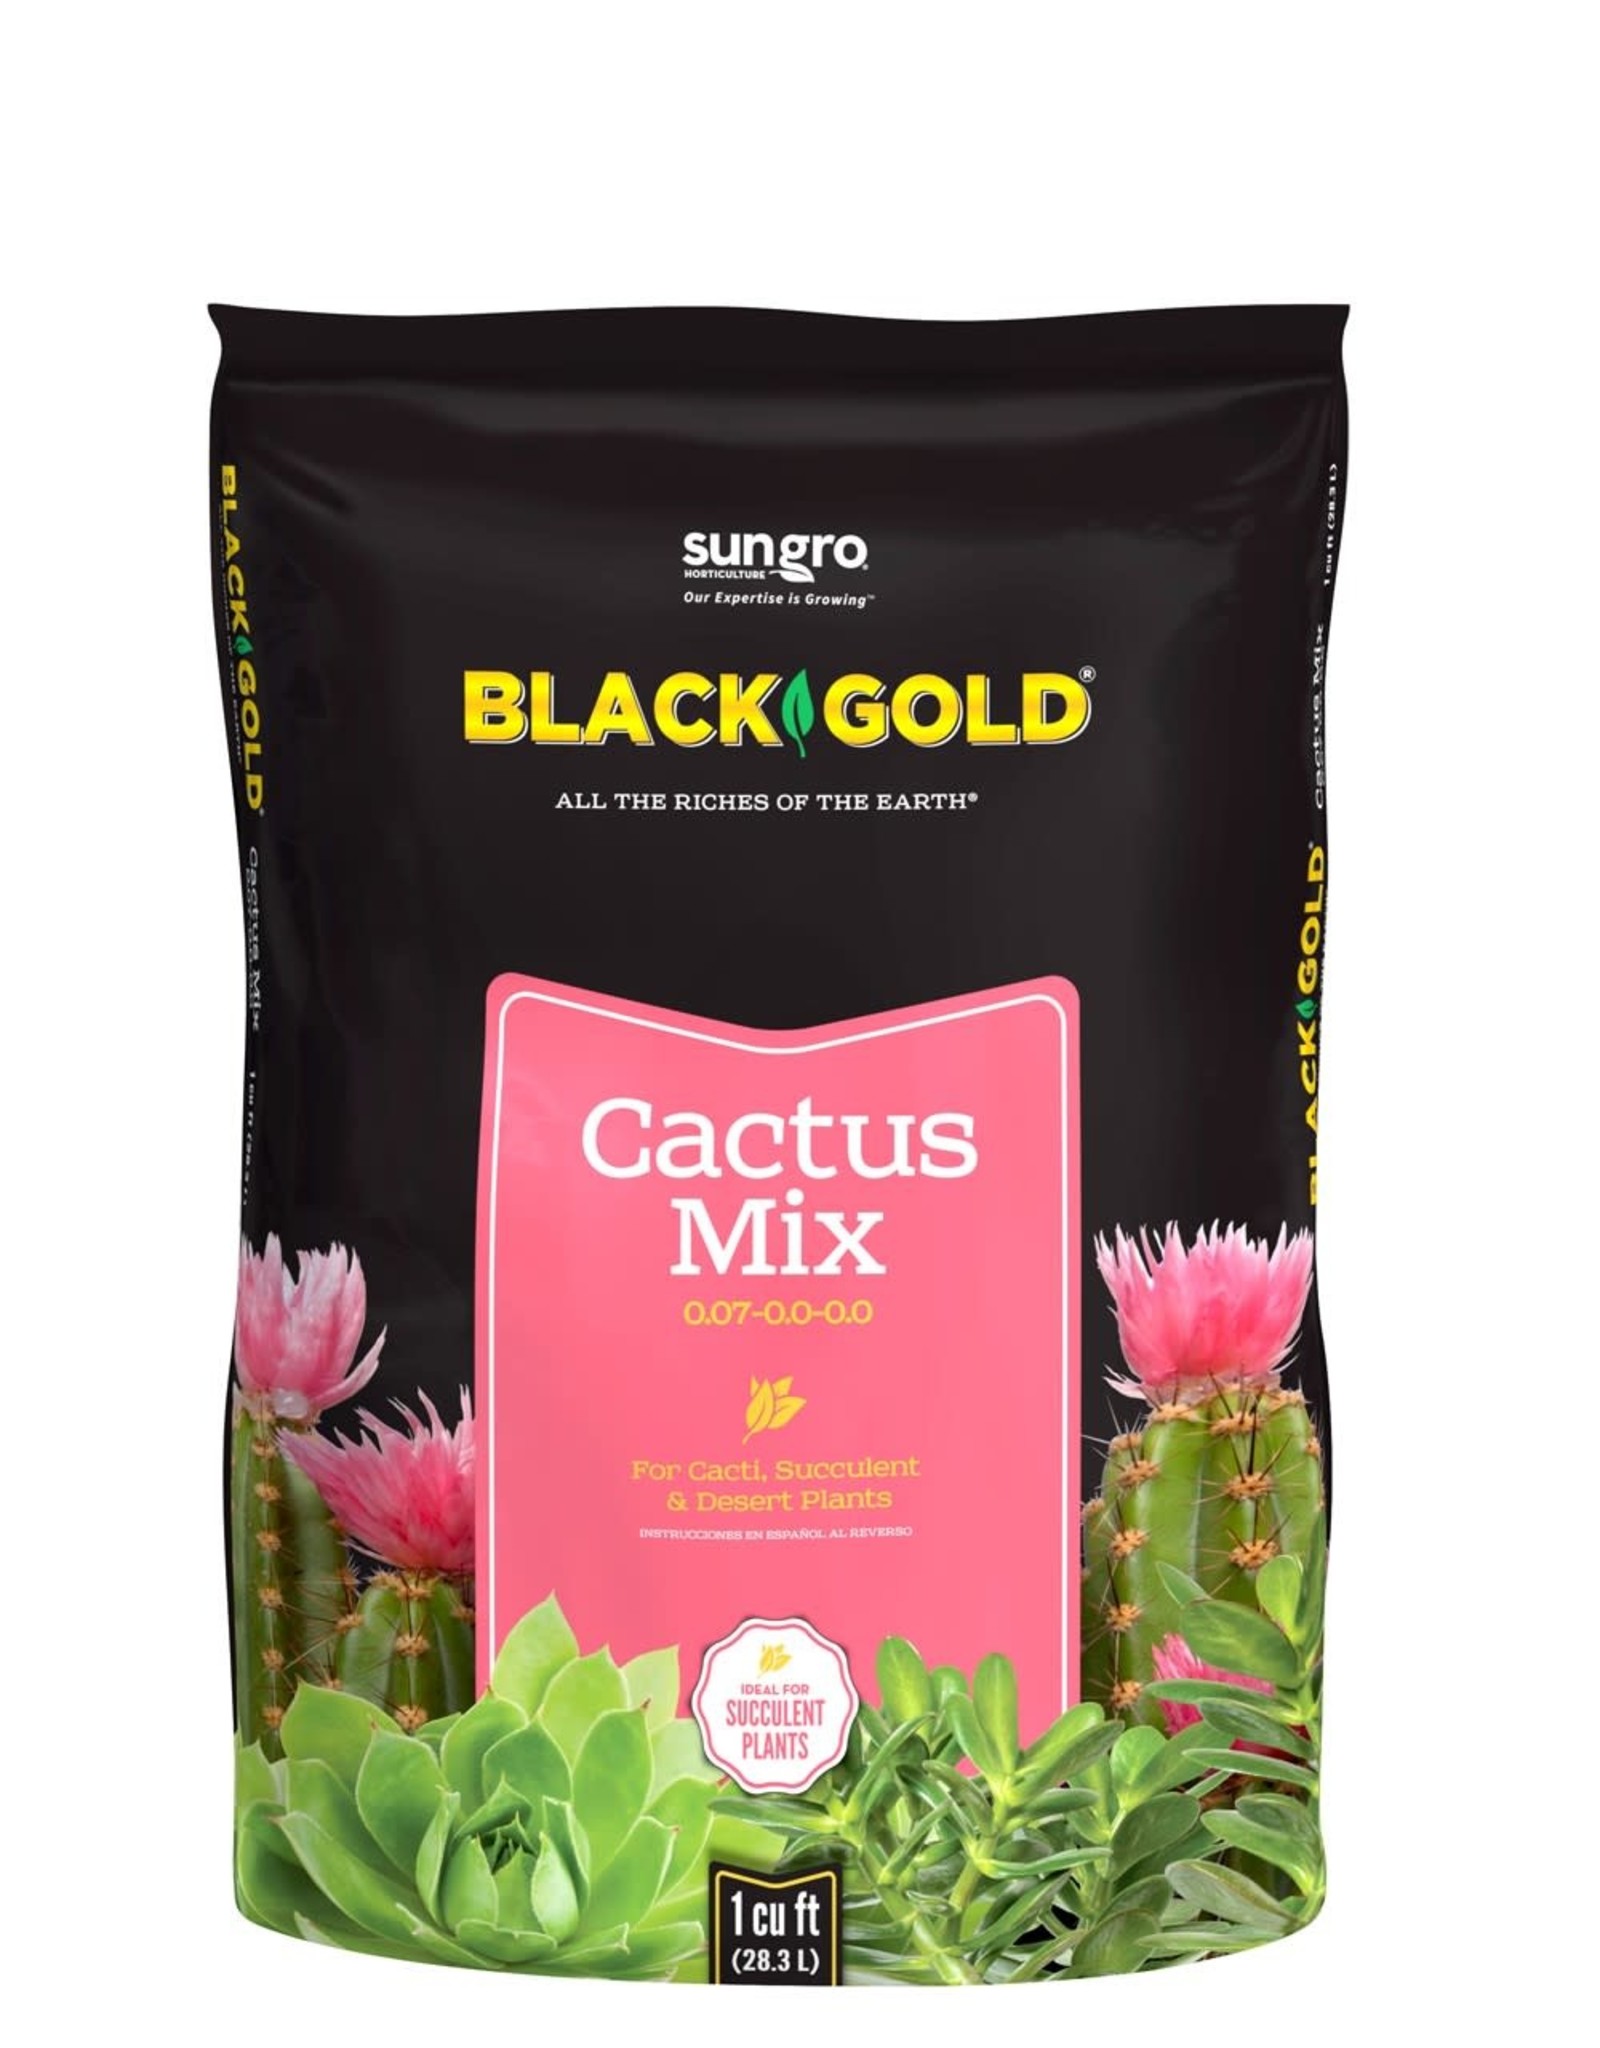 Black Gold Black Gold Cactus Mix 1cuft